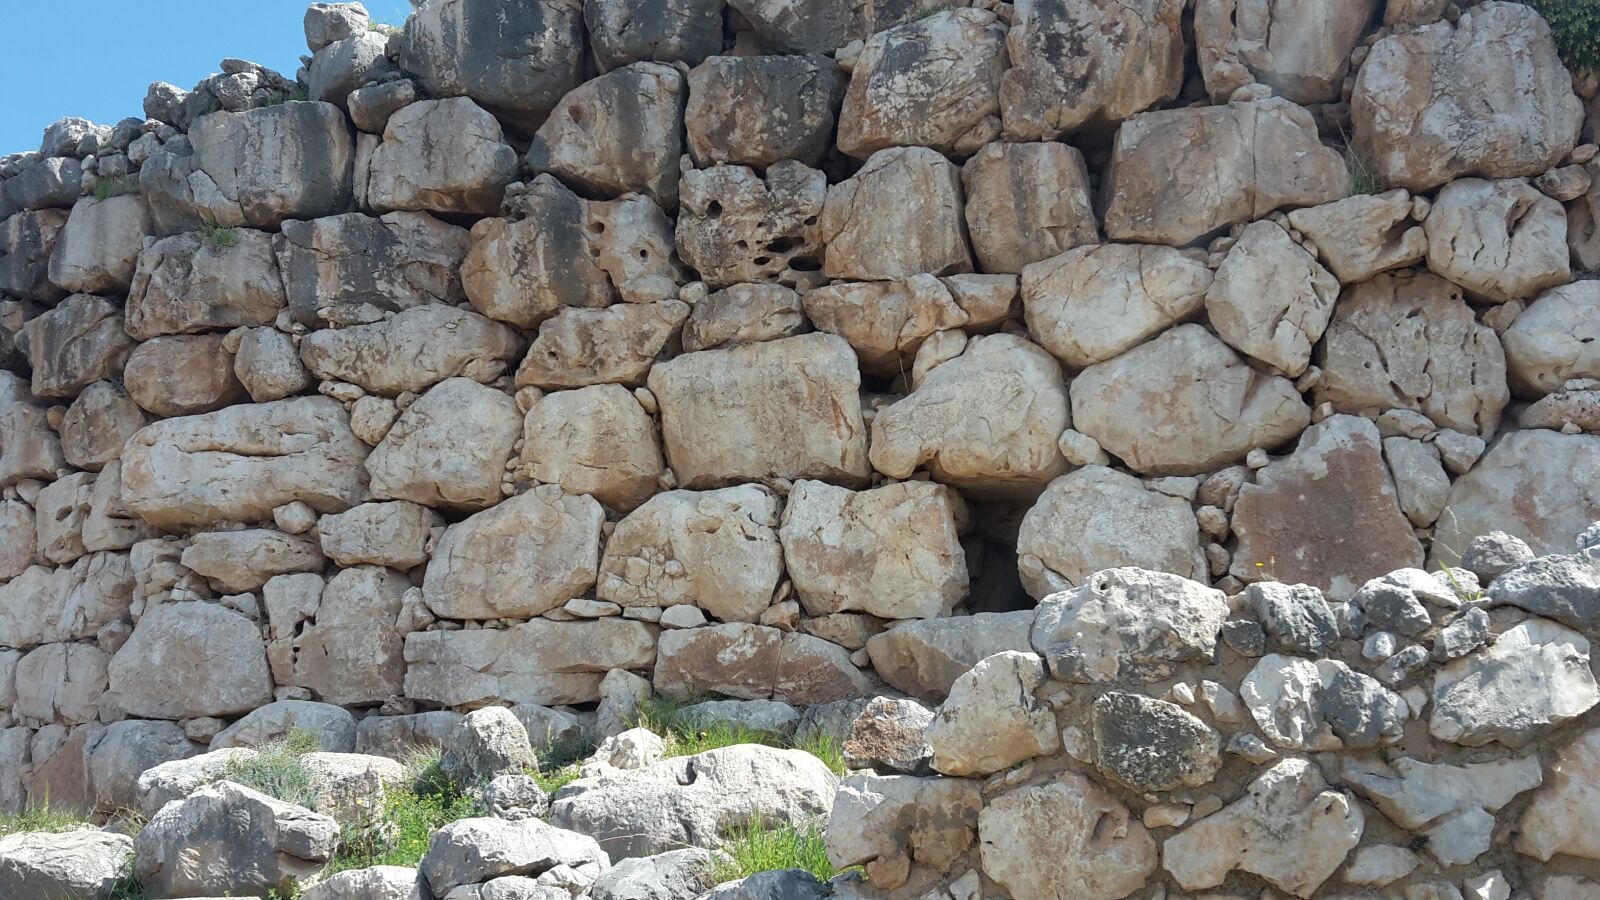 Samsung Galaxy S5 Mini sample photo. Stones, stone wall, masonry photography